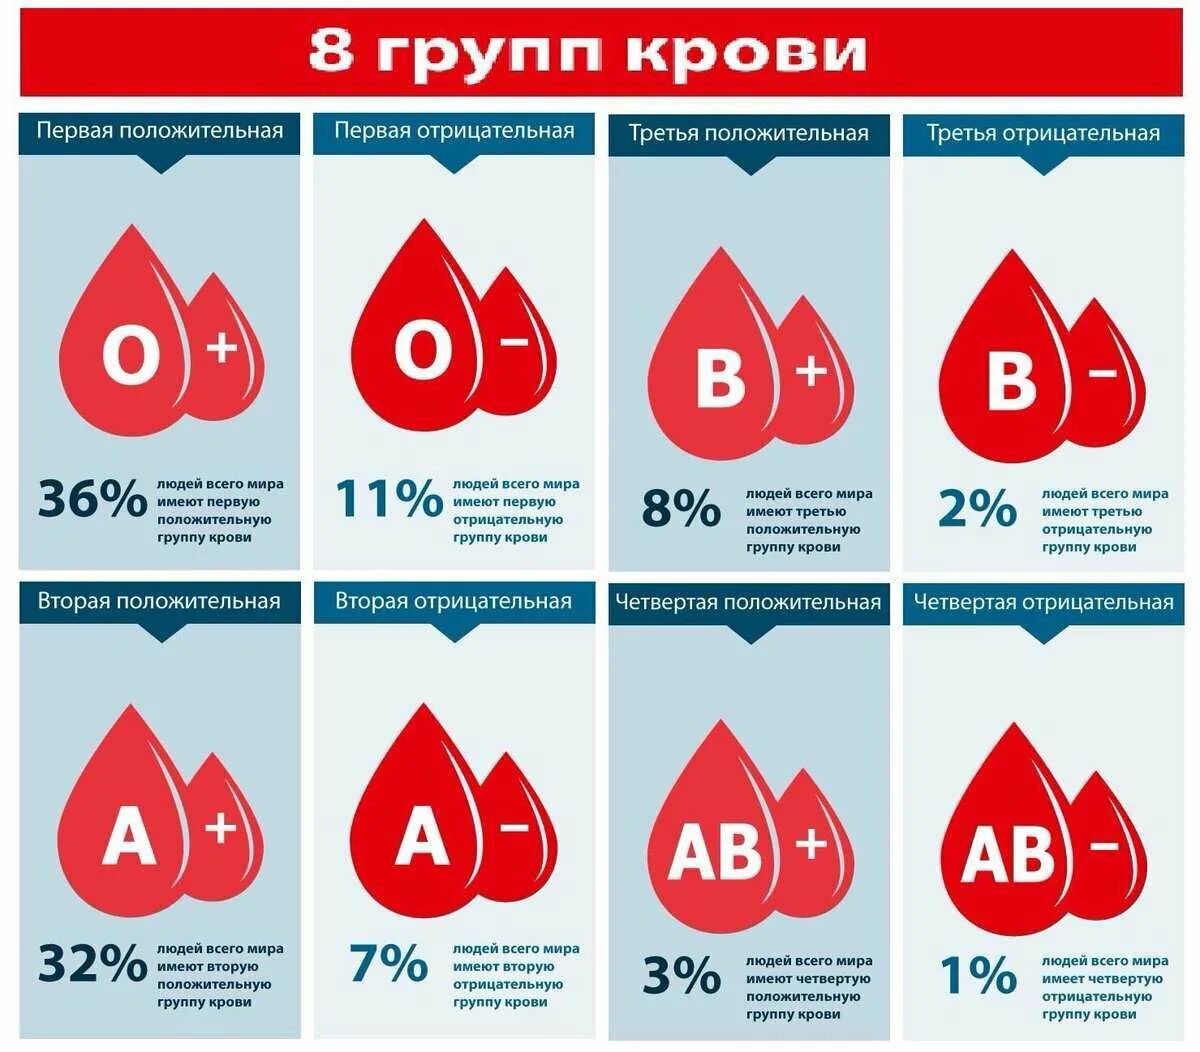 Группа крови легко. Группа крови. Первая положительная группа крови. Третья положительная кровь. 1отрицательгая группа крови.